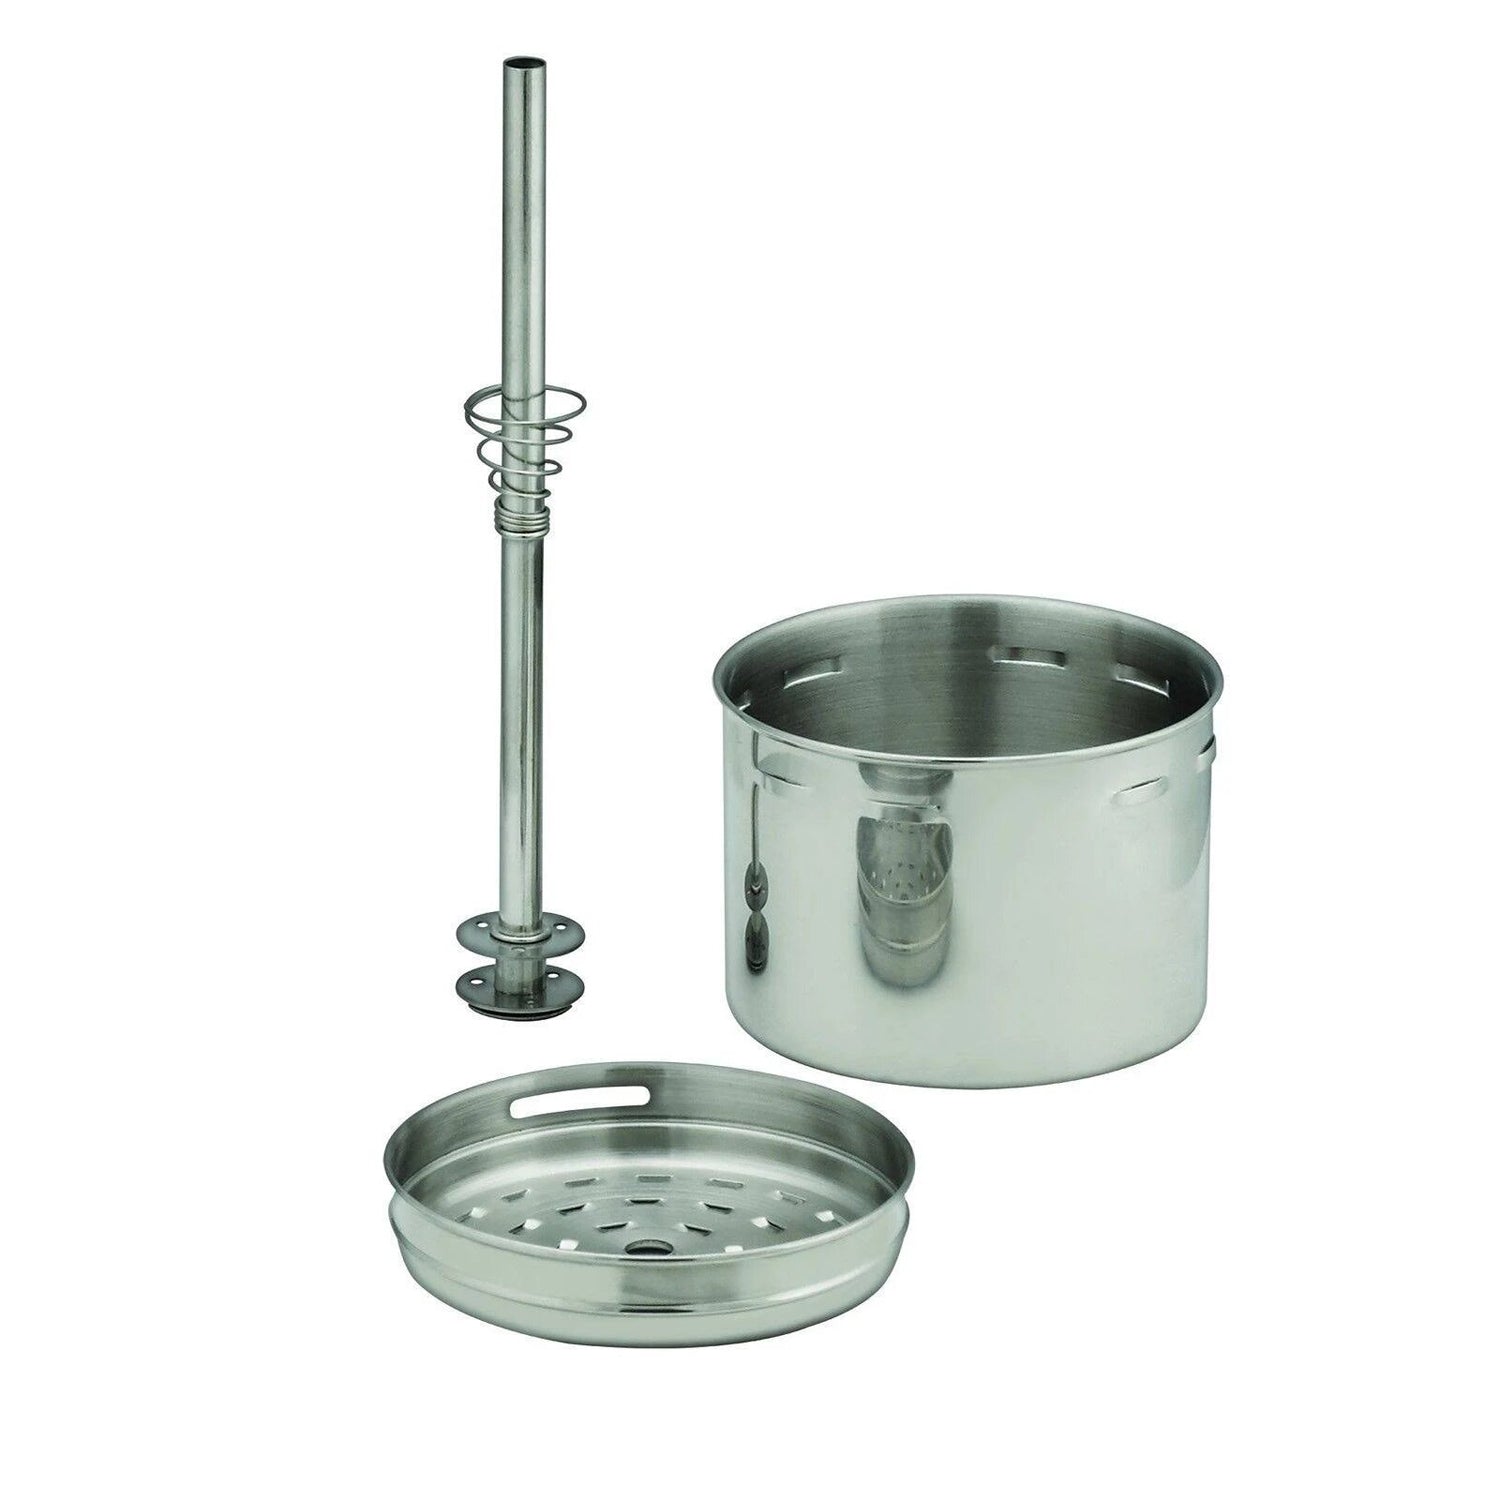 Farberware FCP240 4 Cups Electric Percolator - Silver